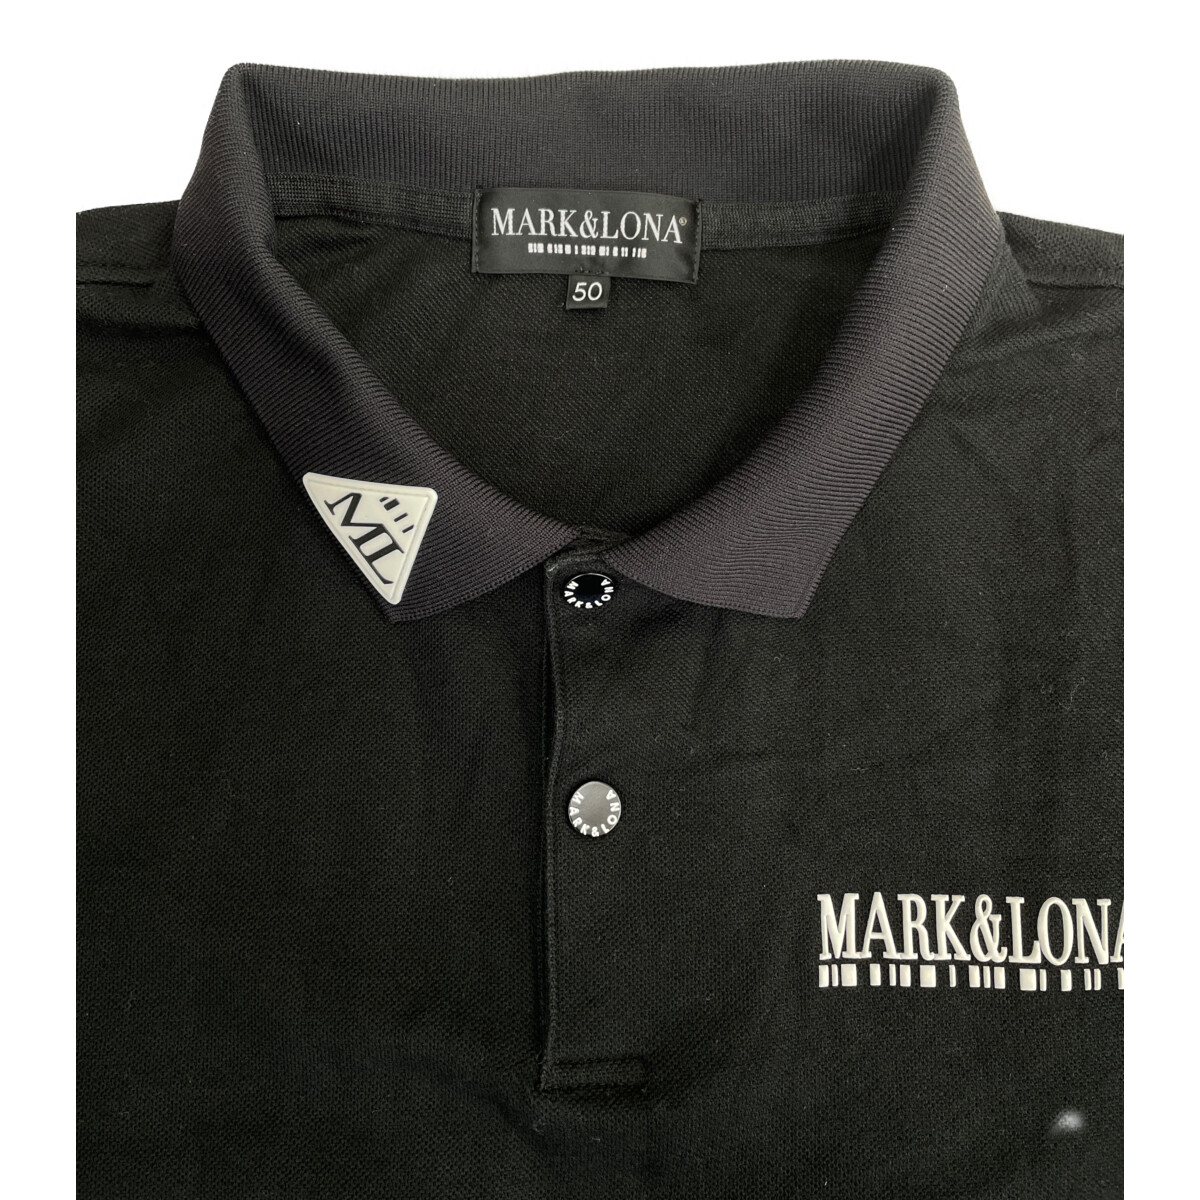 【特価通販】新品 MARK&LONA マーク&ロナ ポロシャツ ワンピース ゴルフウェア ウエア